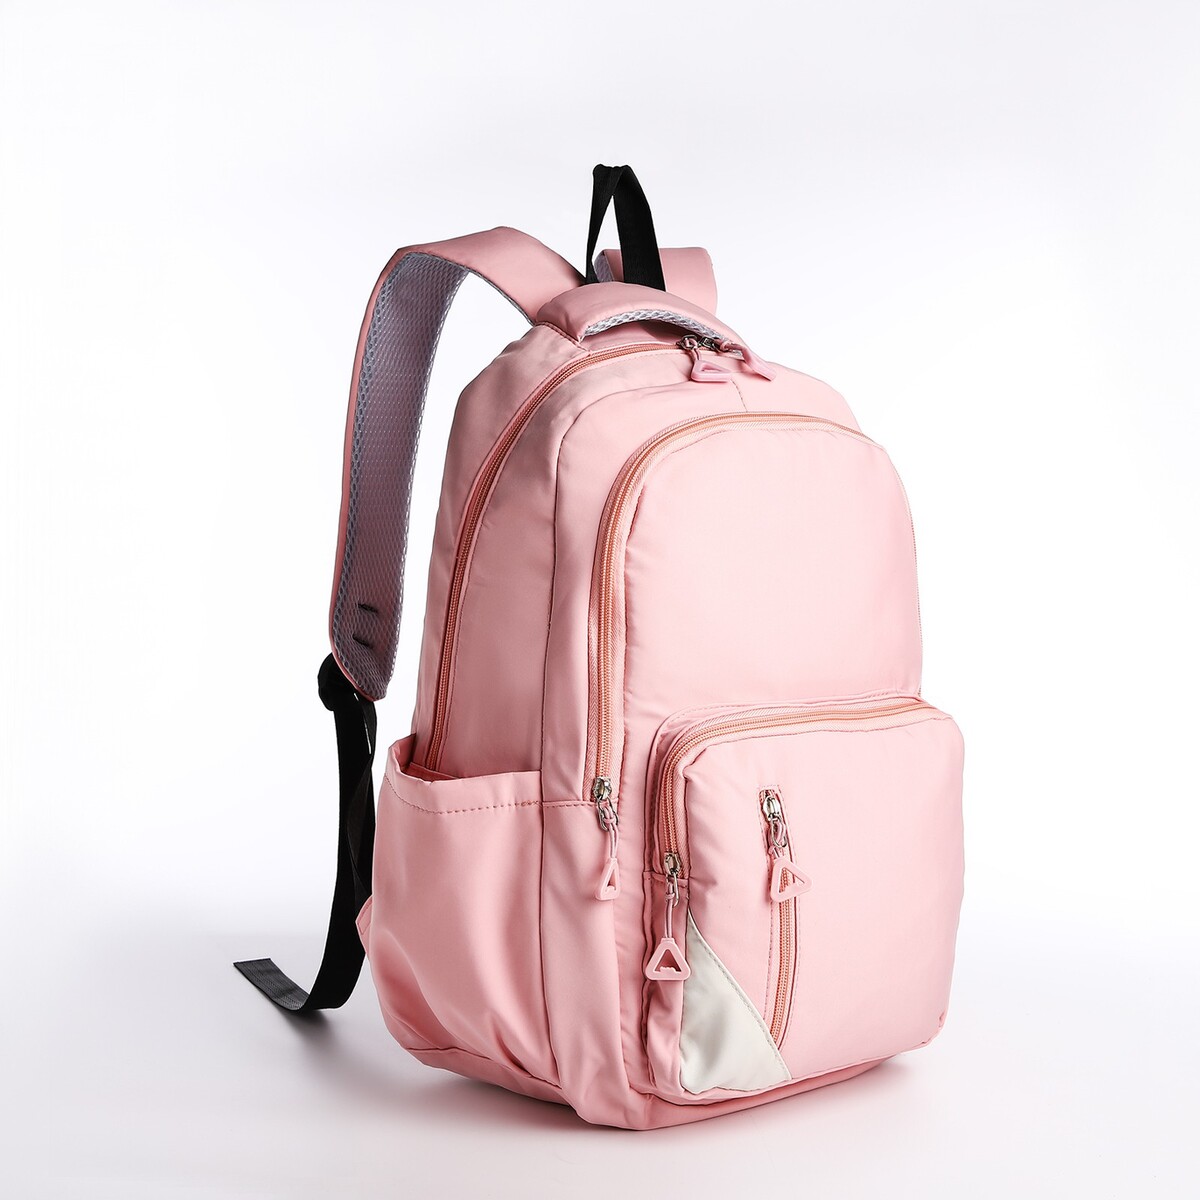 Рюкзак молодежный из текстиля, 2 отдела, 3 кармана, цвет розовый